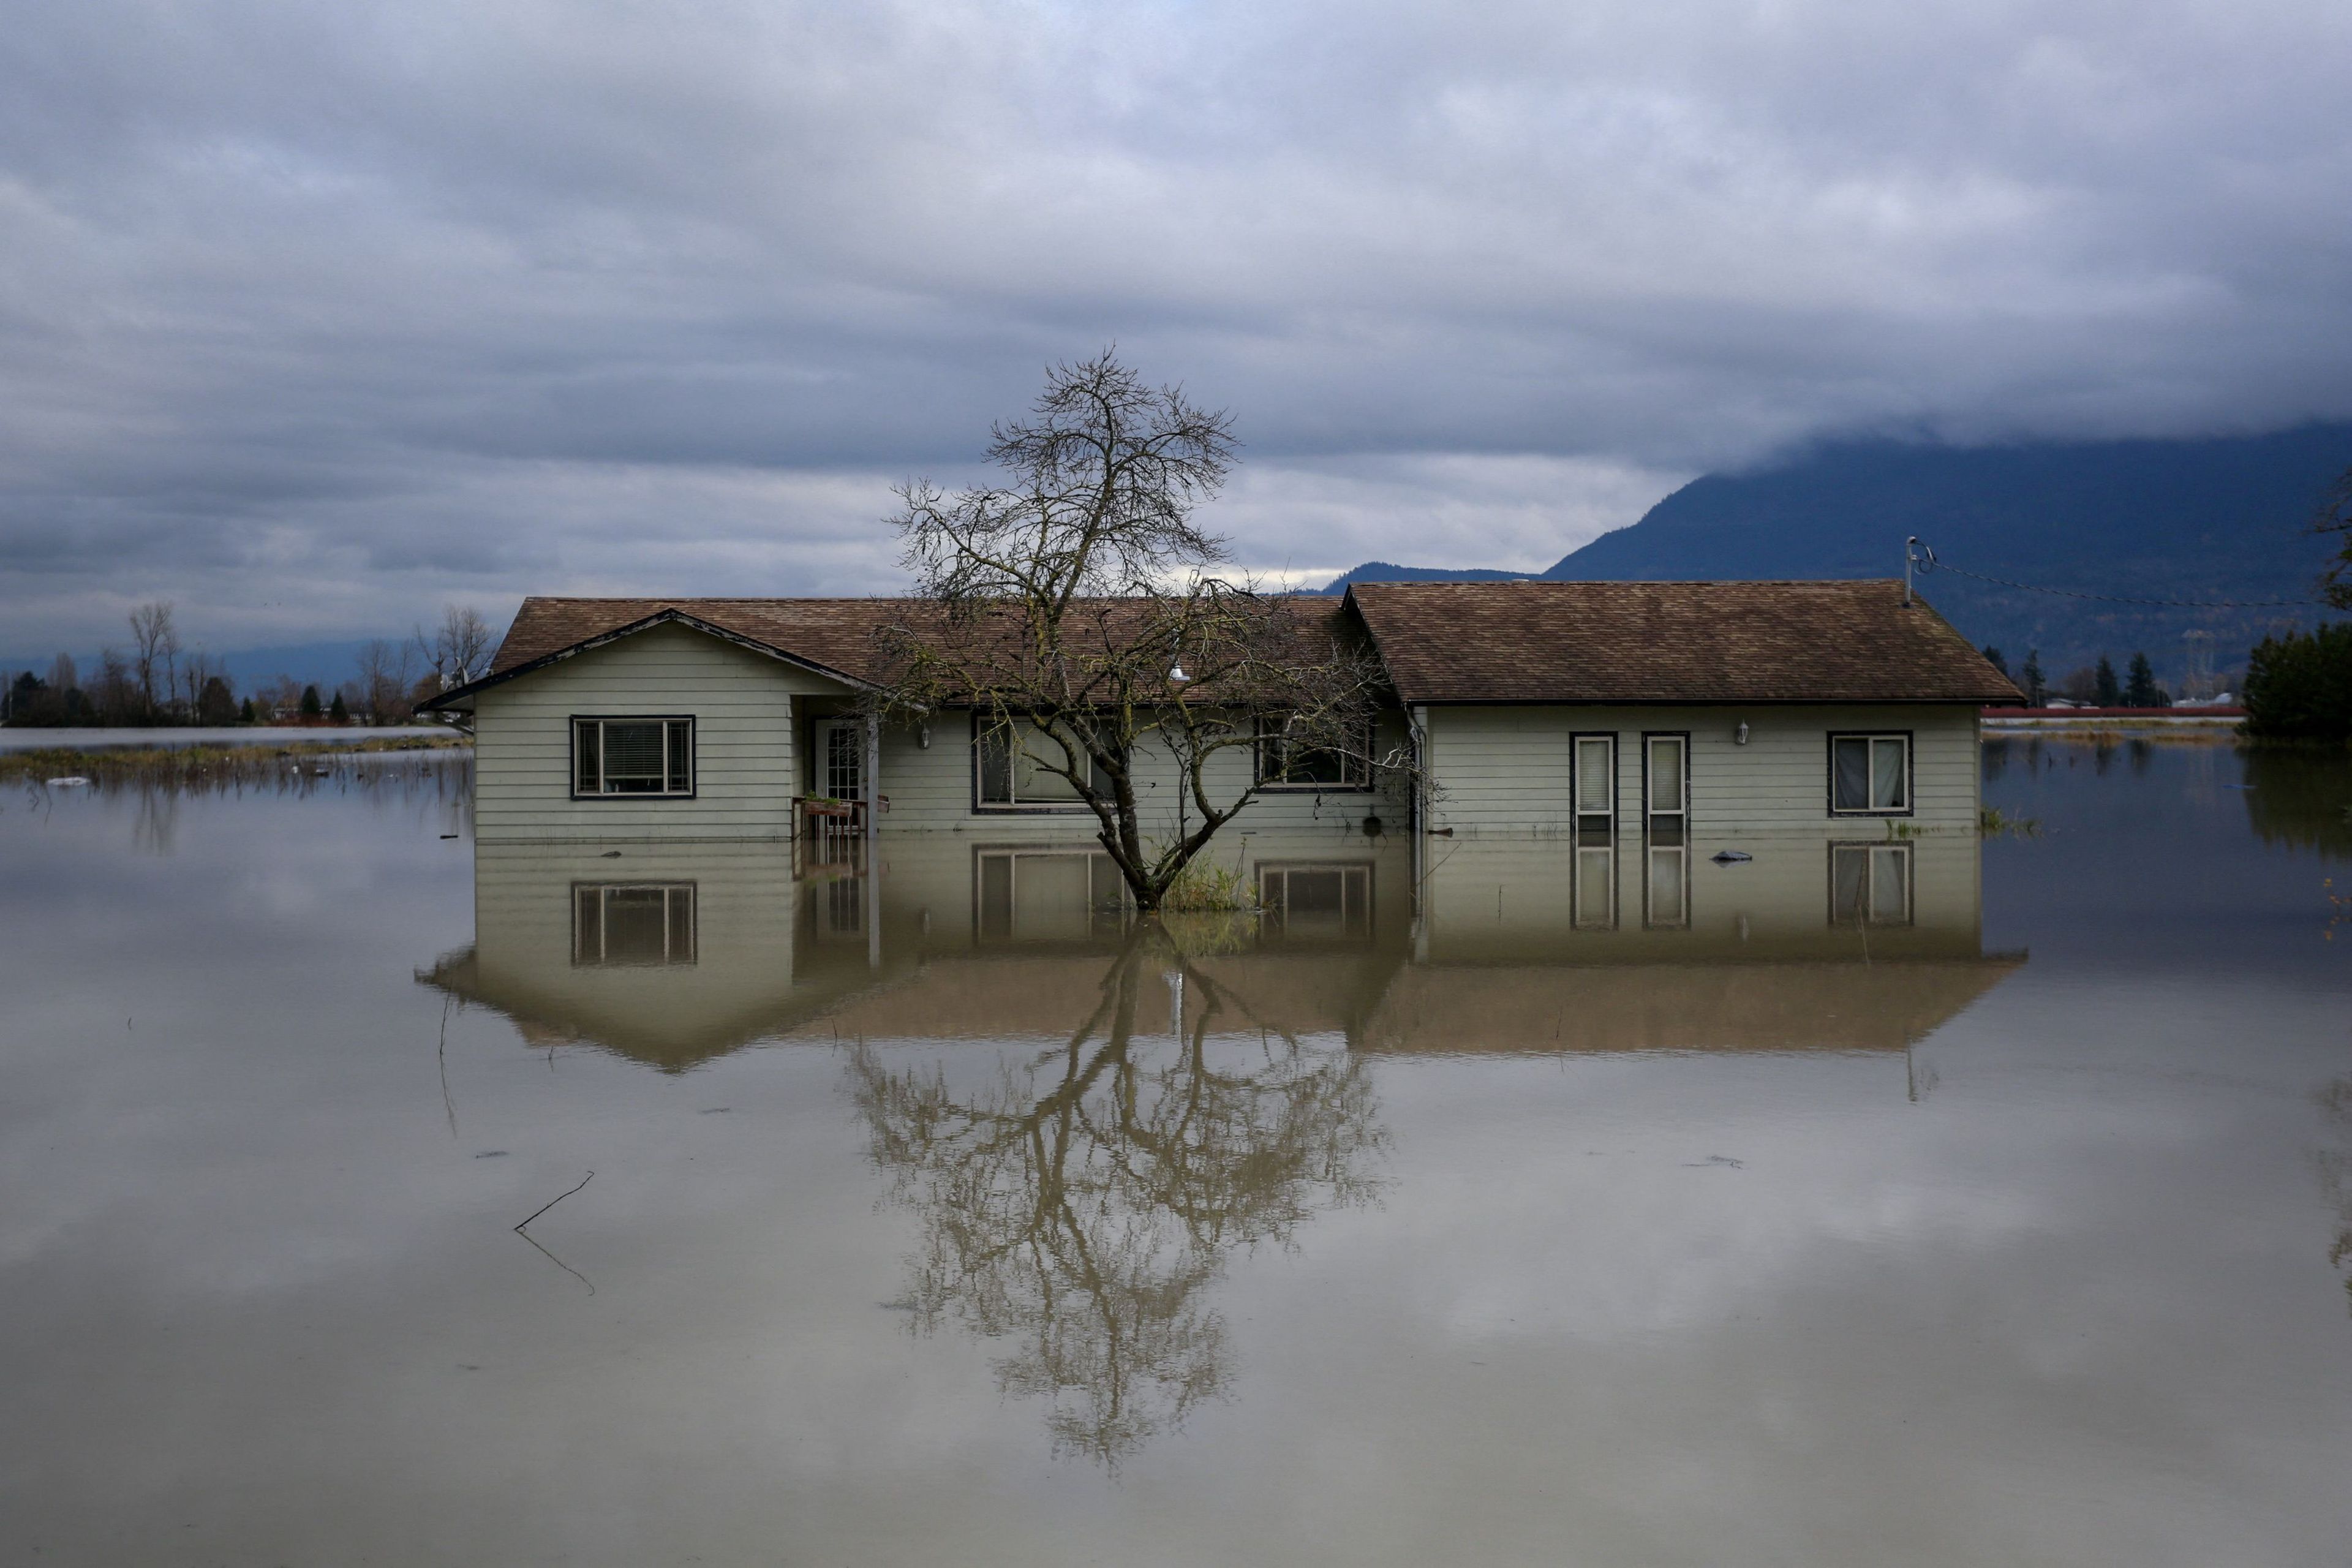 Una casa se refleja en las aguas de la inundación en el vecindario de Yarrow después de que las tormentas provocaran inundaciones y deslizamientos de tierra en Chilliwack, Columbia Británica (Canadá).